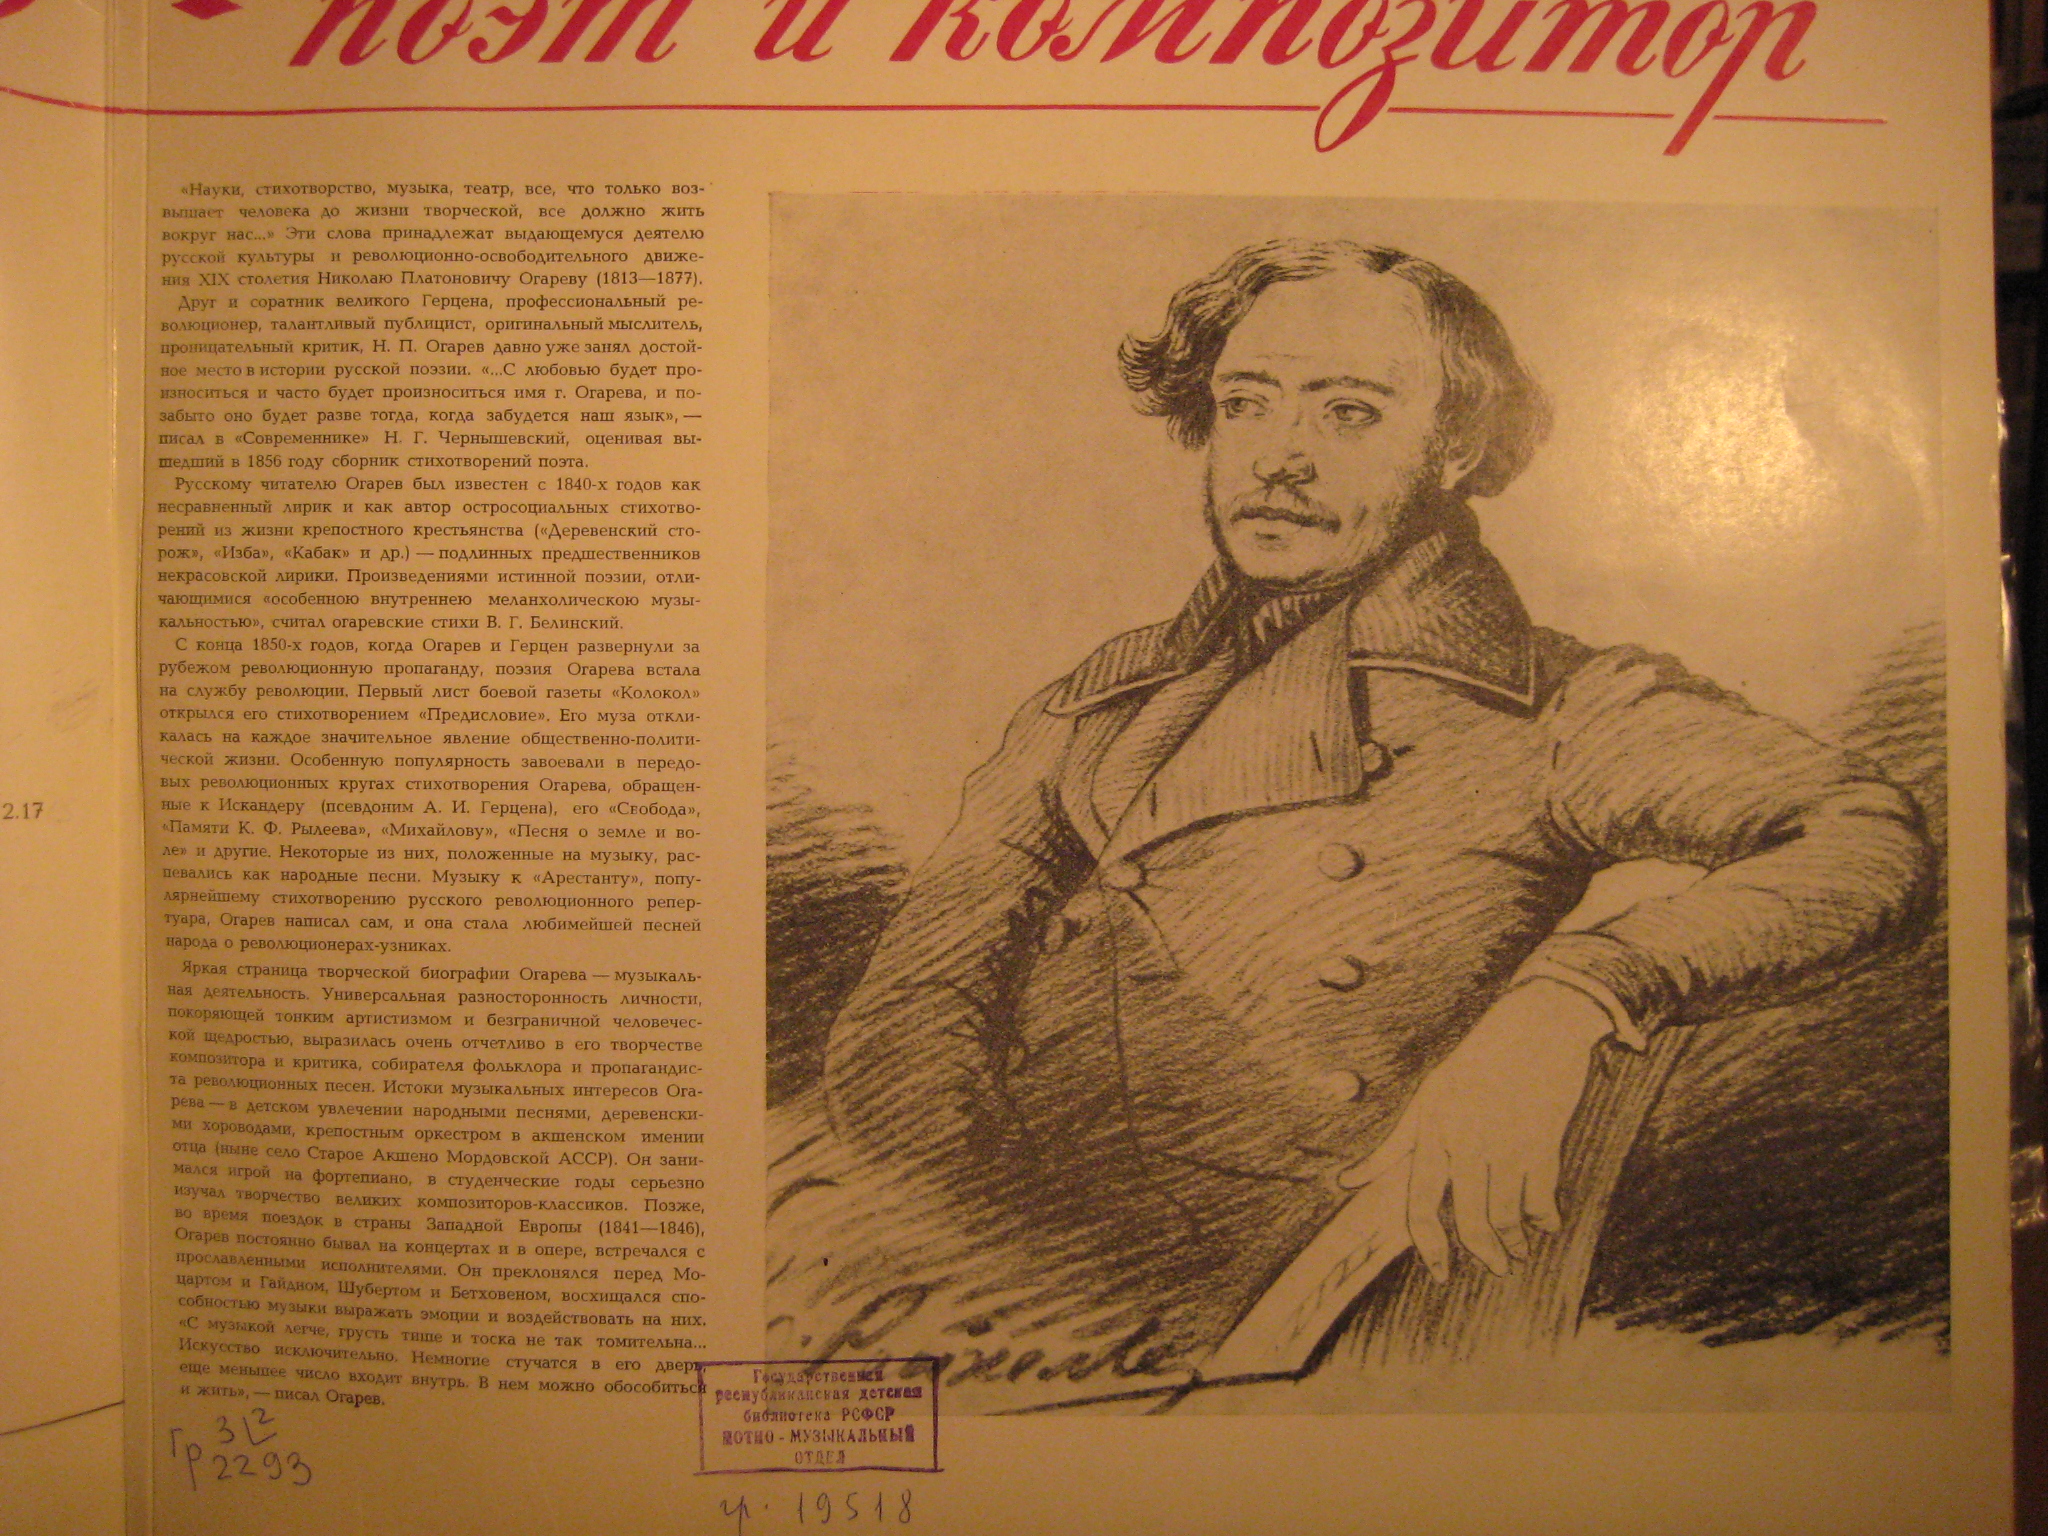 Н. ОГАРЕВ (1813—1877) — ПОЭТ И КОМПОЗИТОР.